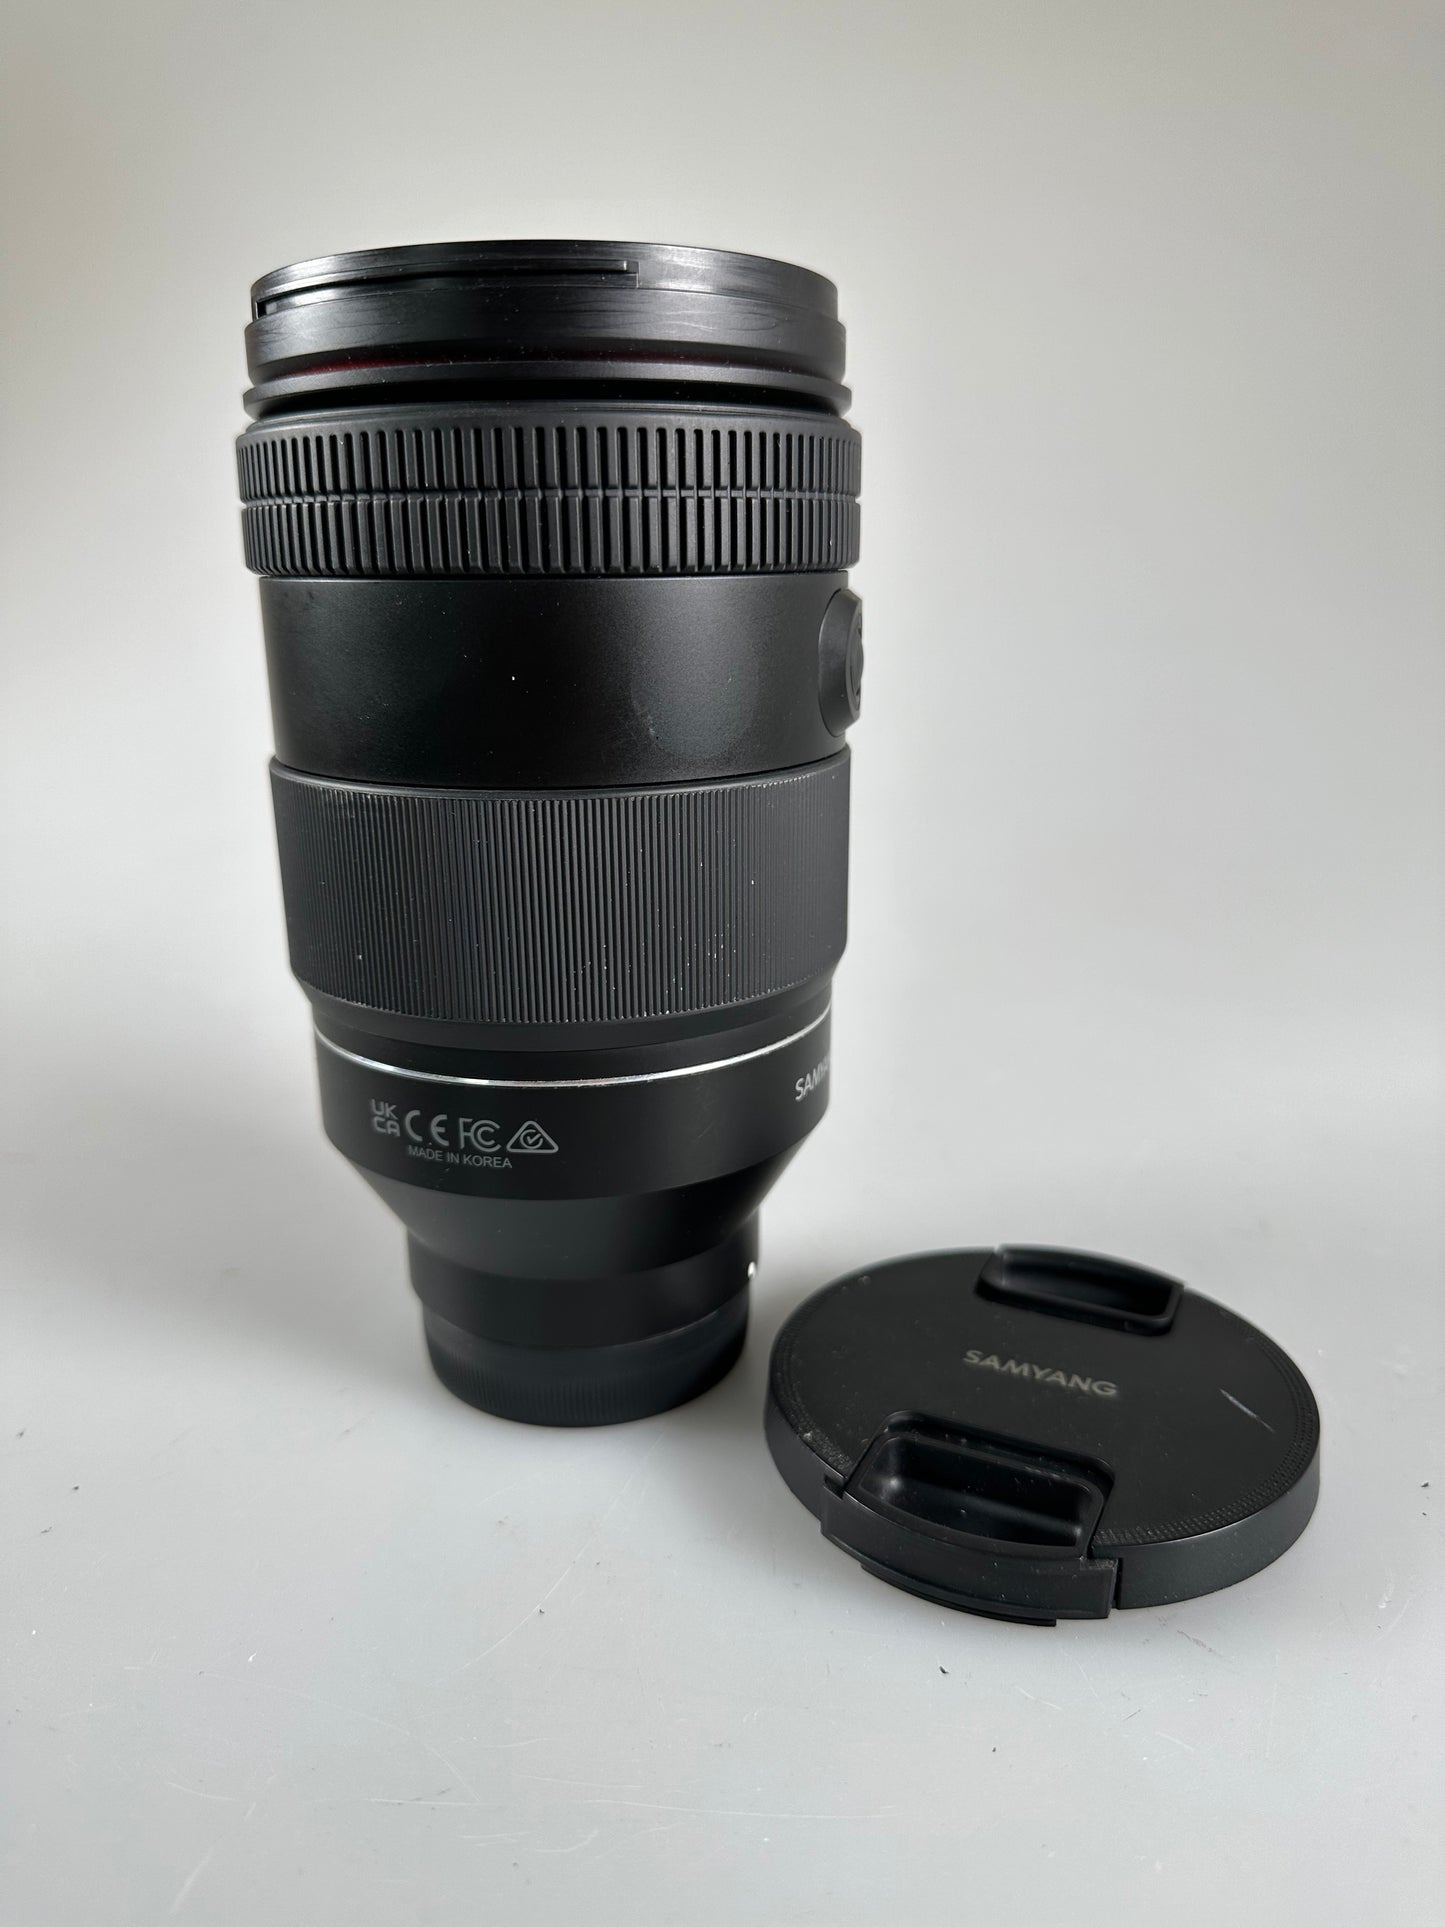 Samyang 35-150mm F2.0-2.8 AF Full Frame Zoom Lens for Sony E Mount